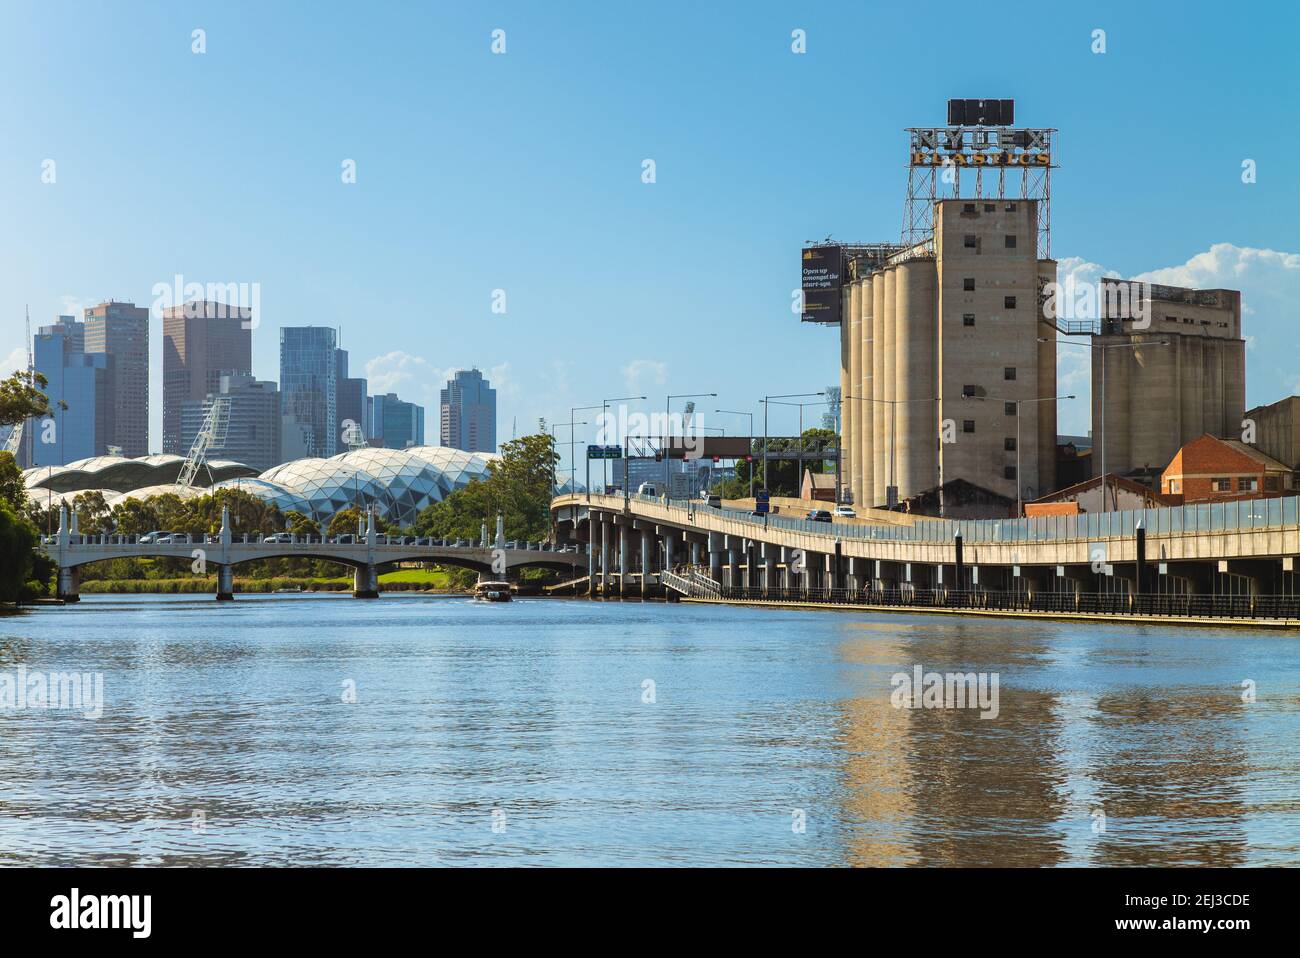 1er janvier 2019 : l'horloge de Nylex près du fleuve Yarra à melbourne, victoria, australie. Classé au patrimoine mondial de l'UNESCO, il est un élément emblématique de Melbourne Banque D'Images